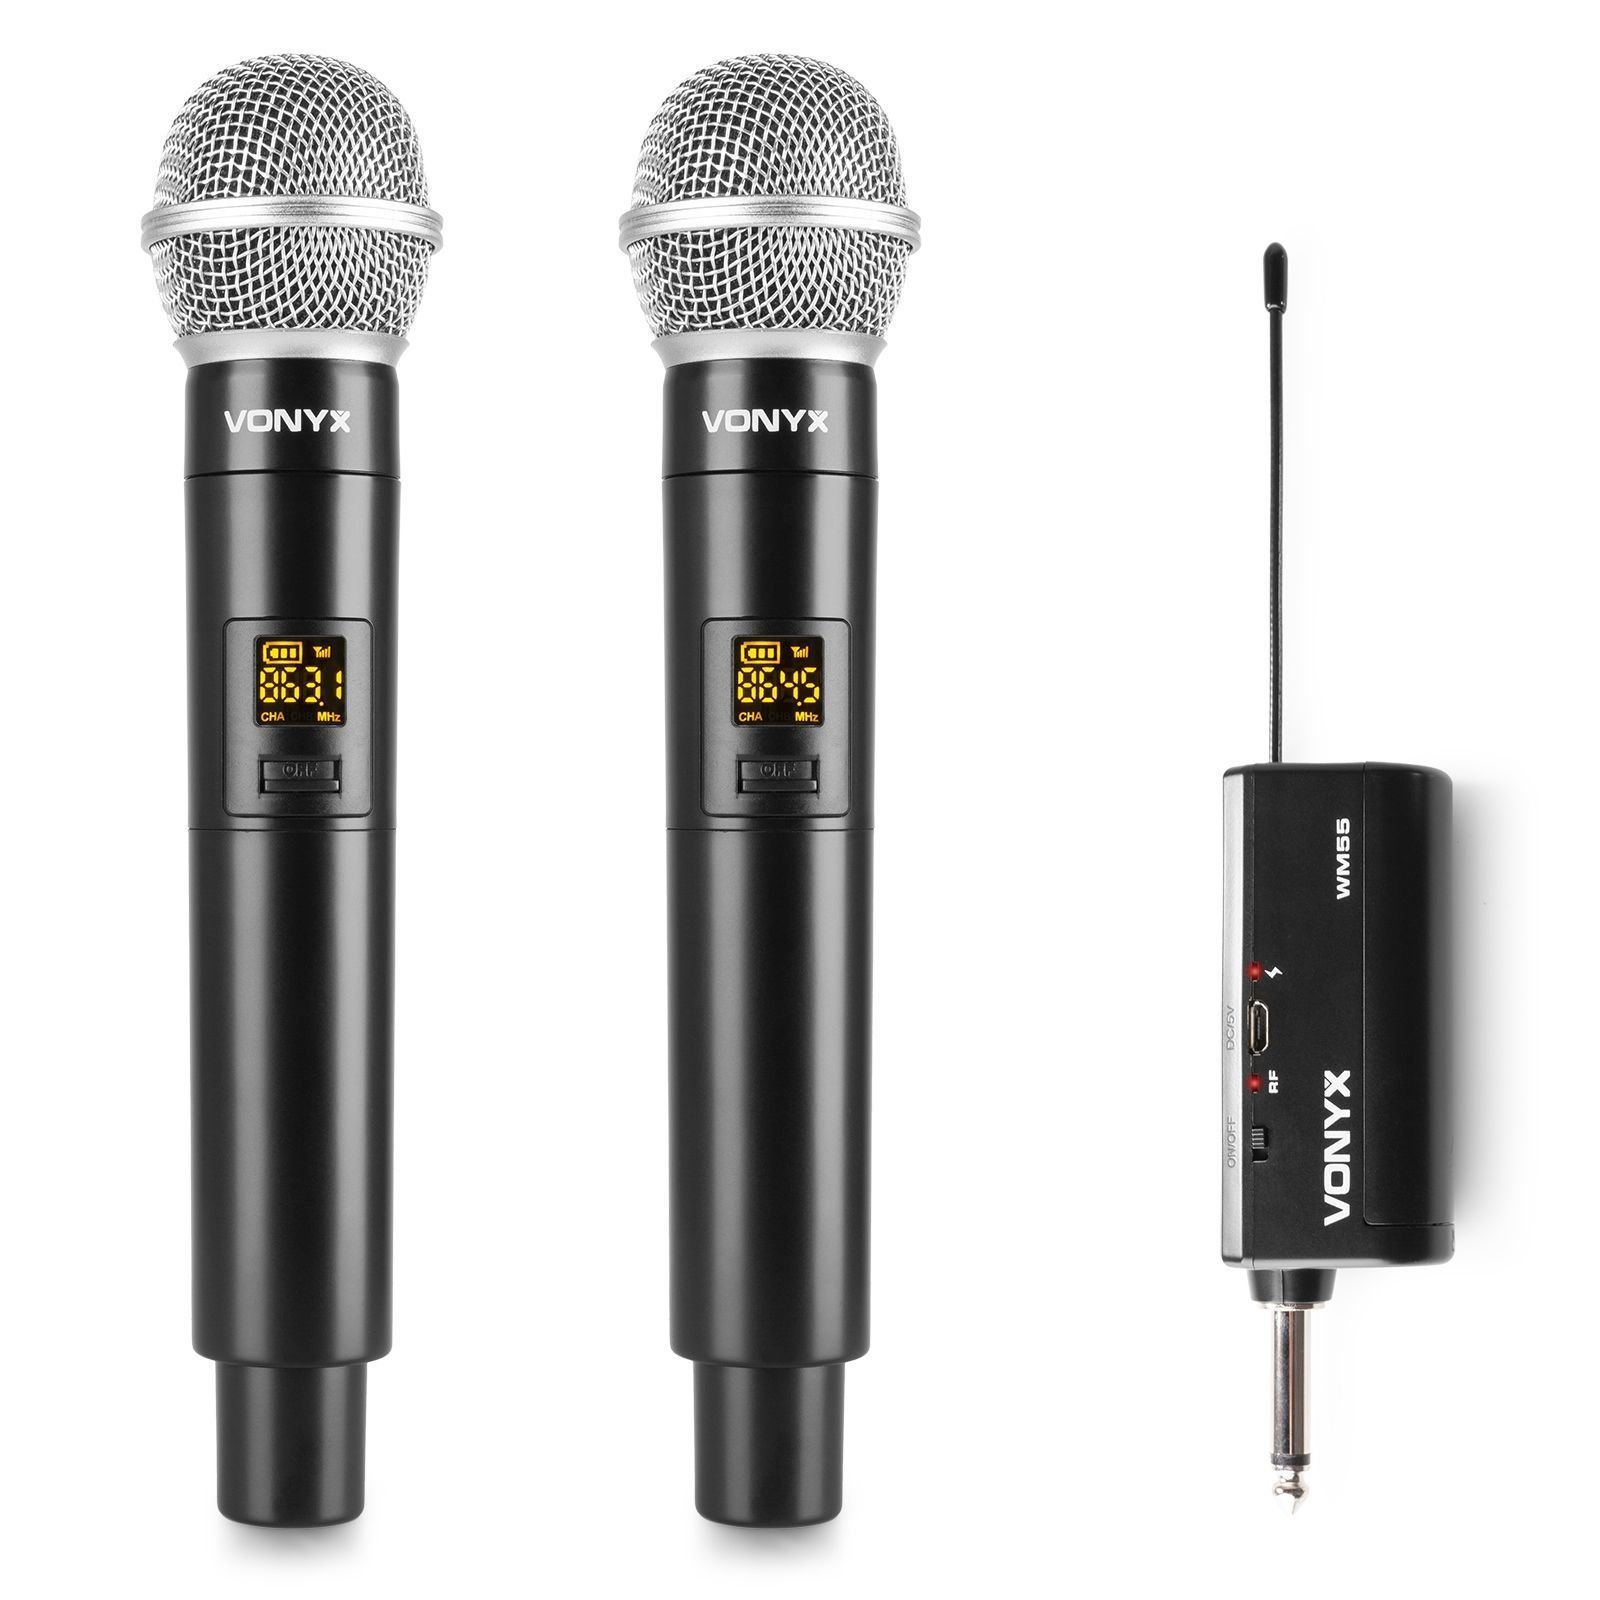 Retourdeal - Vonyx WM552 plug-in draadloze microfoonset met 2